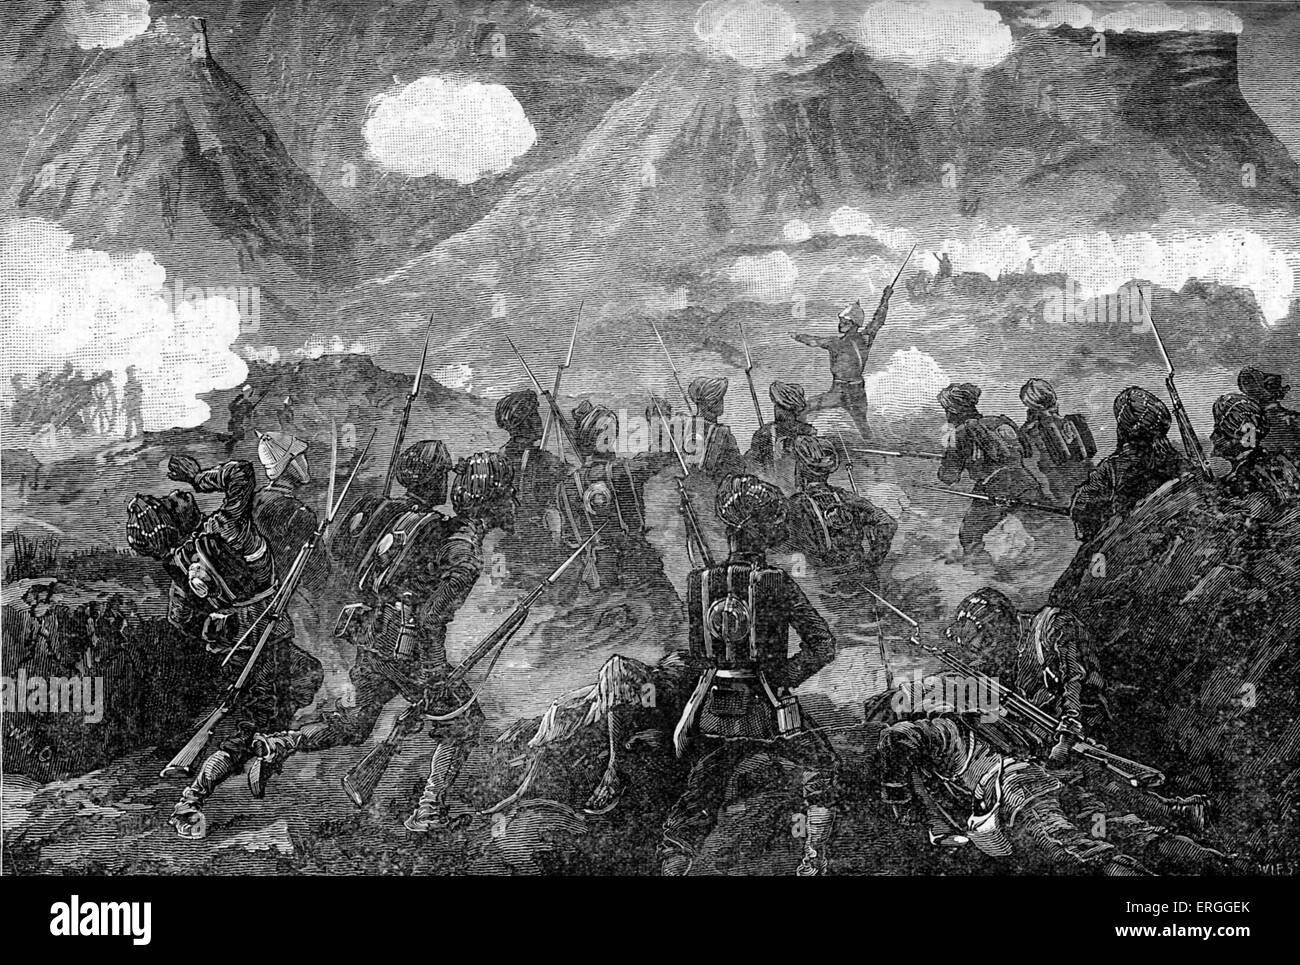 Zweiten Anglo-Afghanischen Krieg: Angriff auf Ali Masjid von Briten Peshawar Tal Field Force unter General Sir Samuel Browne, 1878. Stockfoto